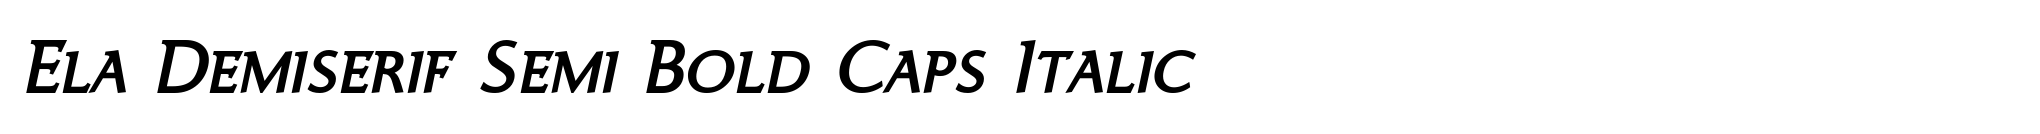 Ela Demiserif Semi Bold Caps Italic image